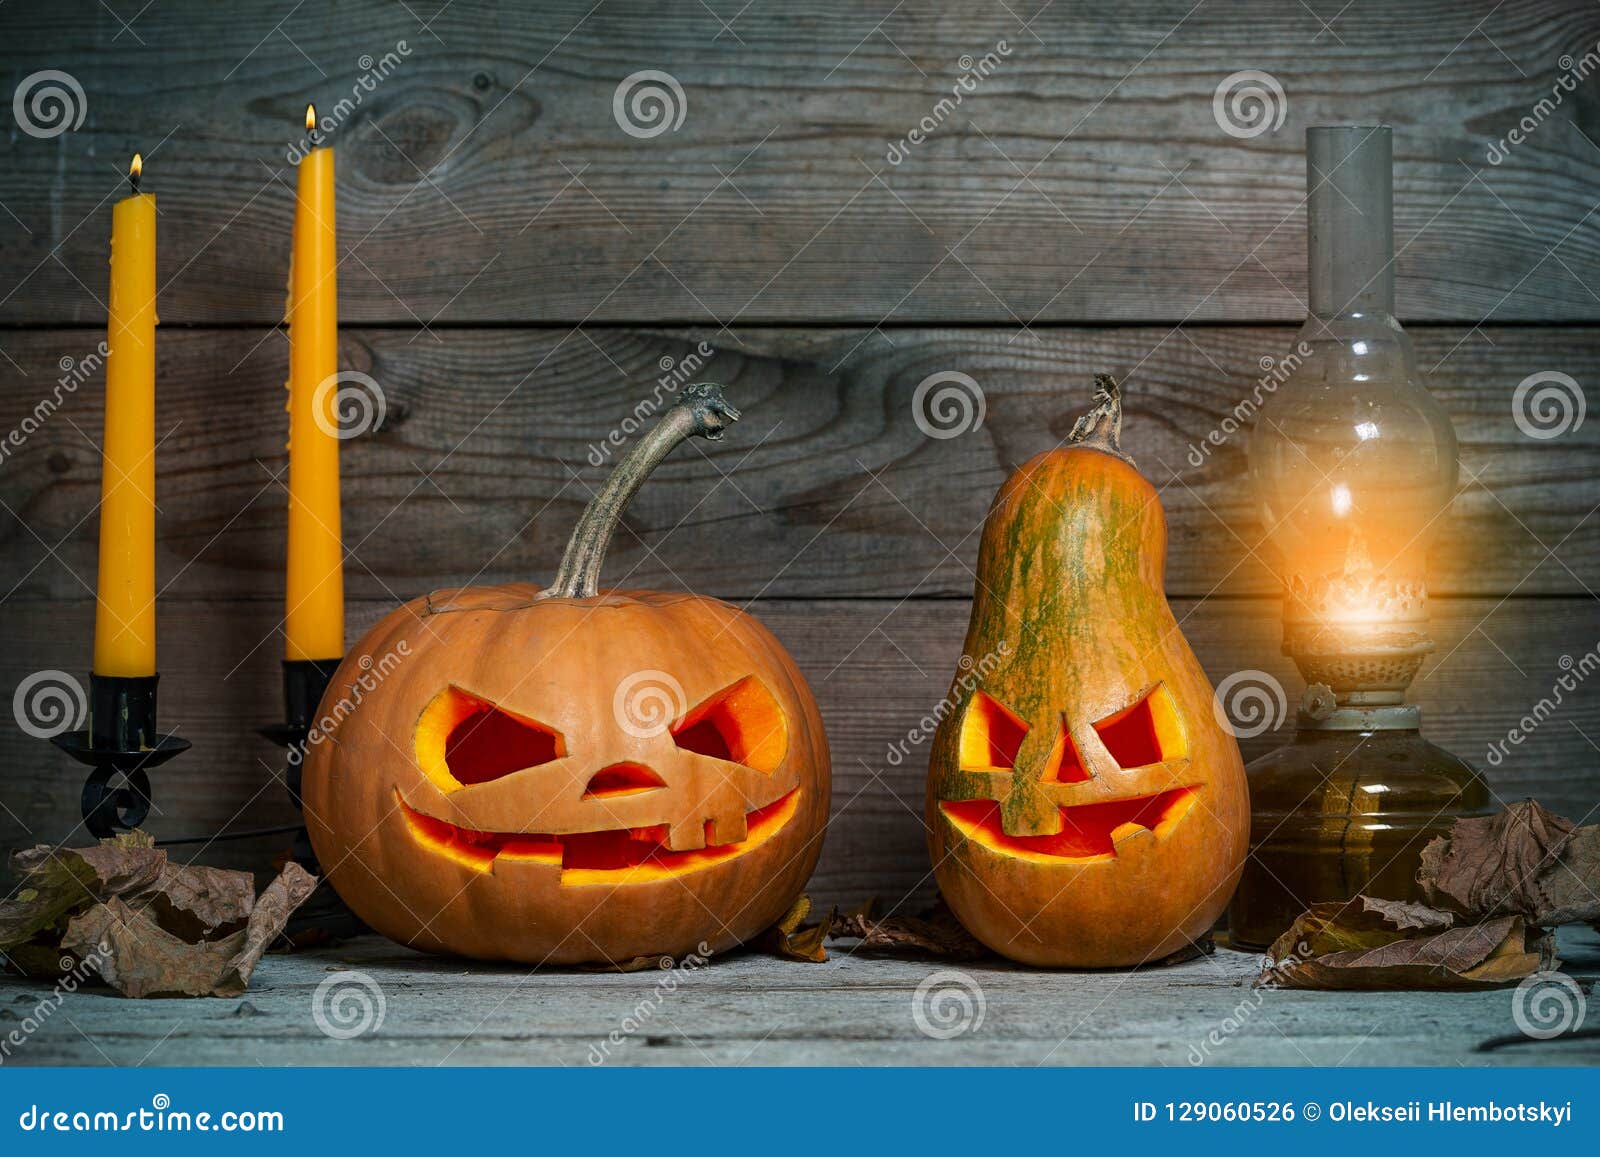 robo O Ambos Calabazas Adornadas Para Halloween En Un Fondo Místico Del Otoño Con Las  Velas Y La Lámpara De Gas Foto de archivo - Imagen de espeluznante,  divertido: 129060526